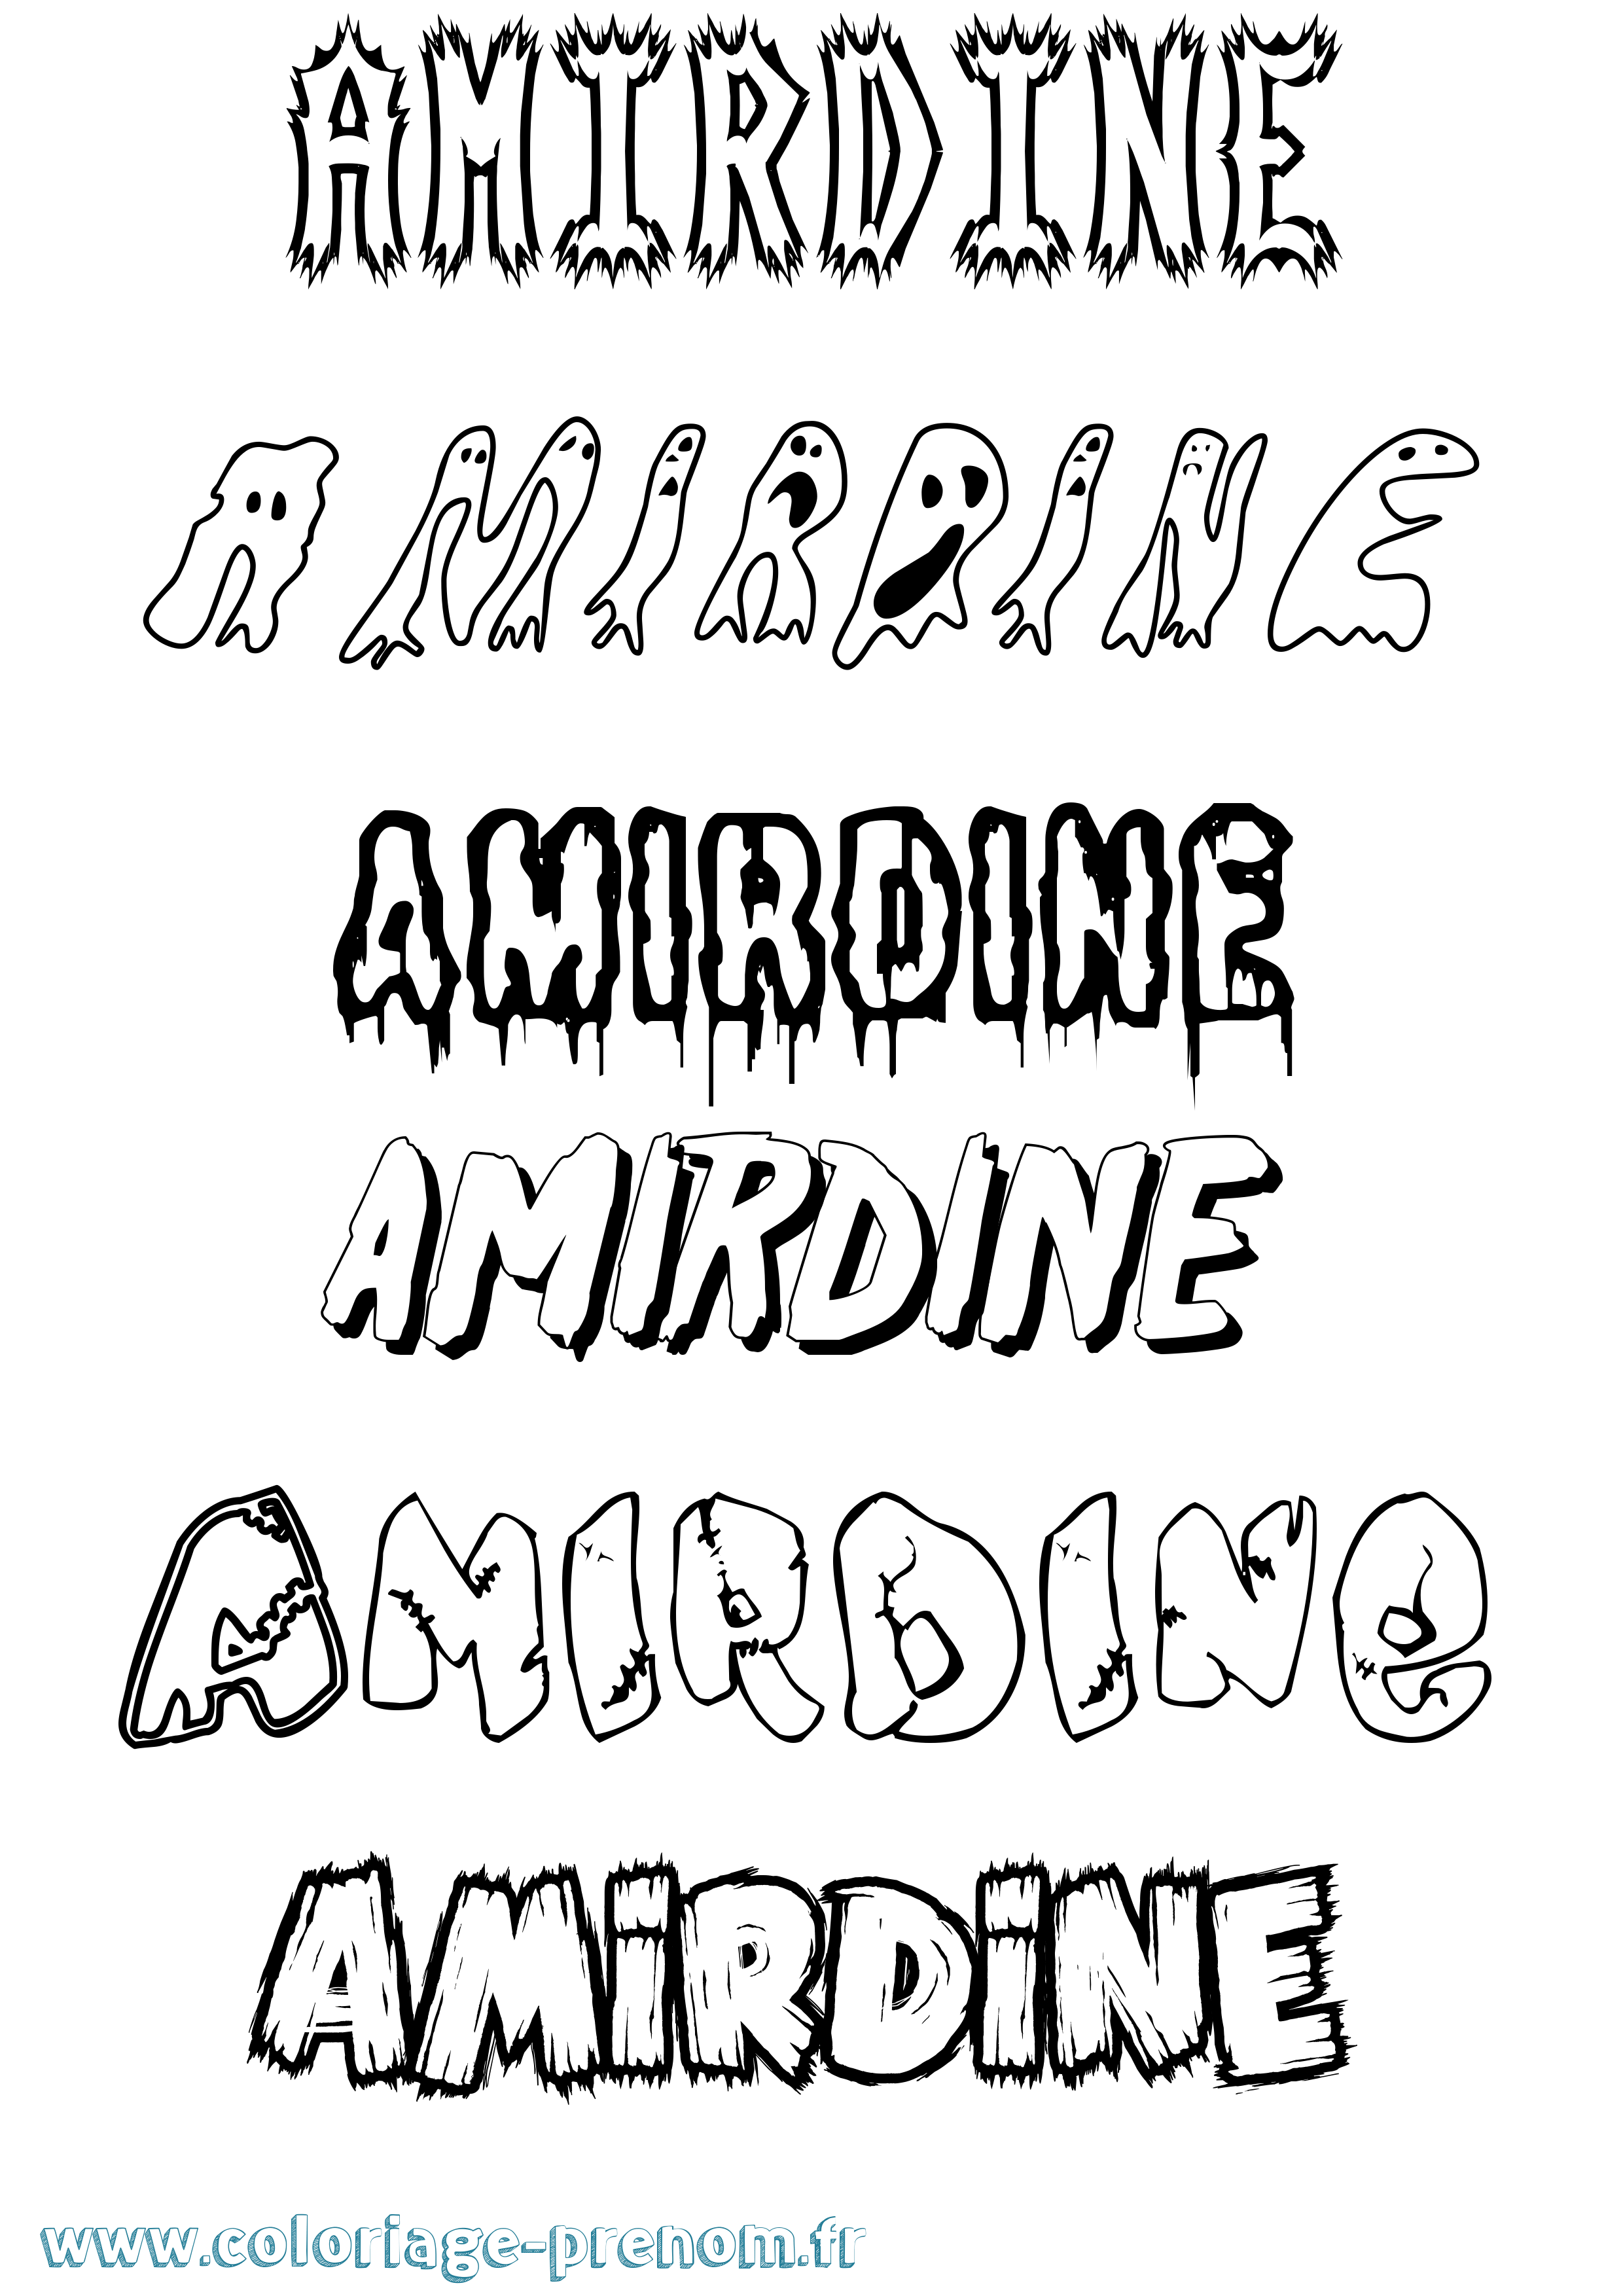 Coloriage prénom Amirdine Frisson